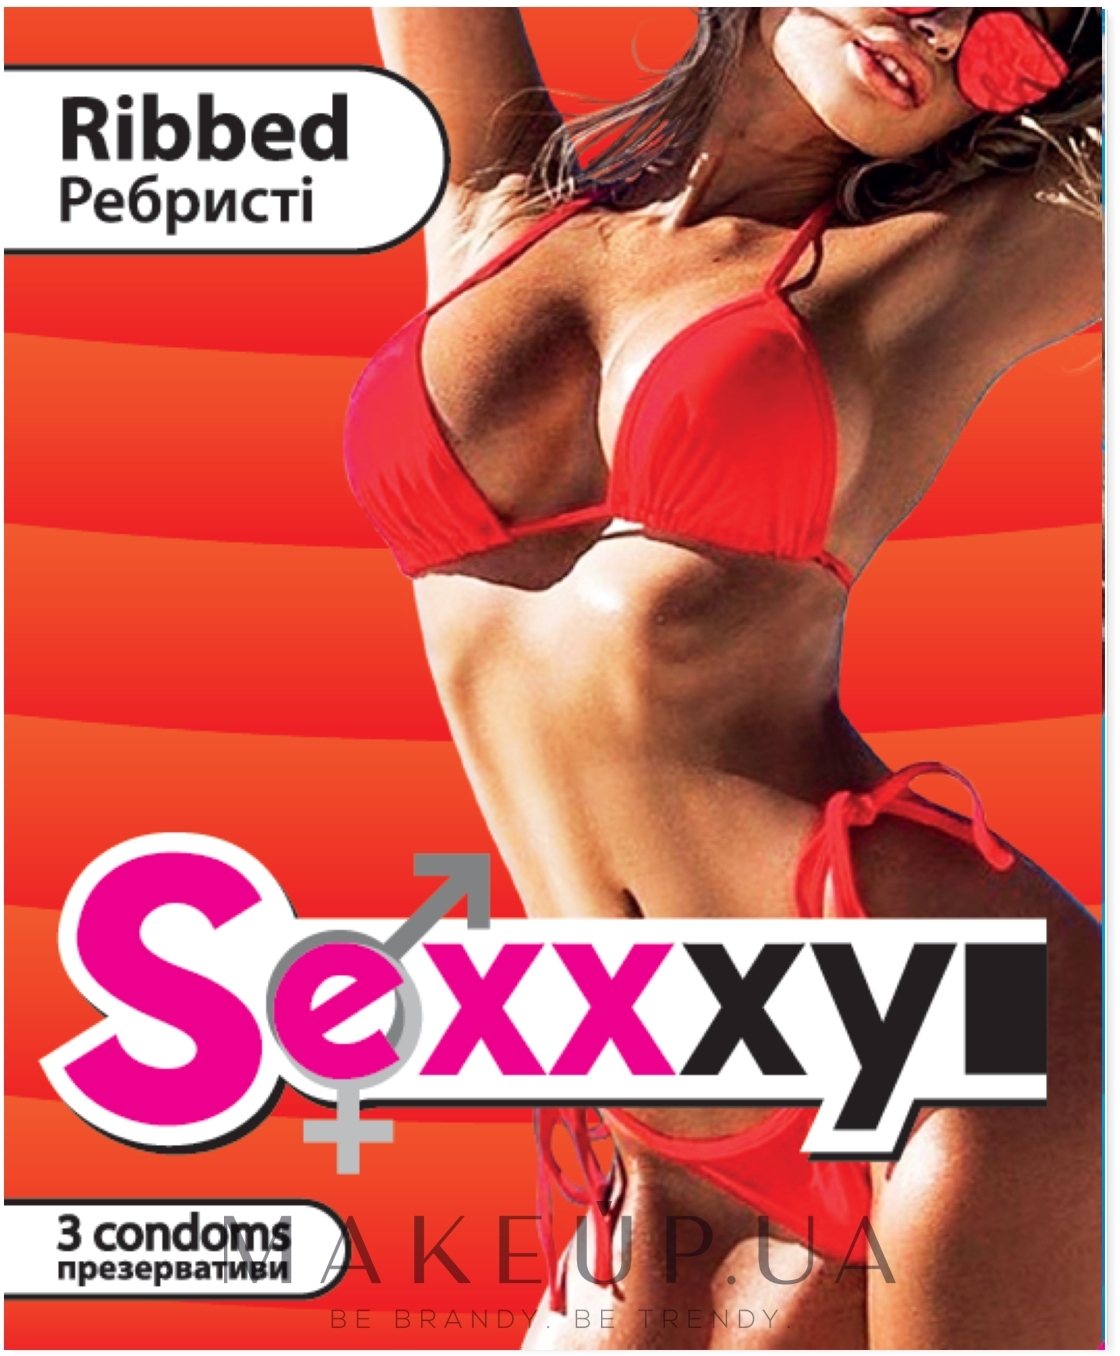 Презервативи "Ribbed" - Sexxxyi — фото 3шт